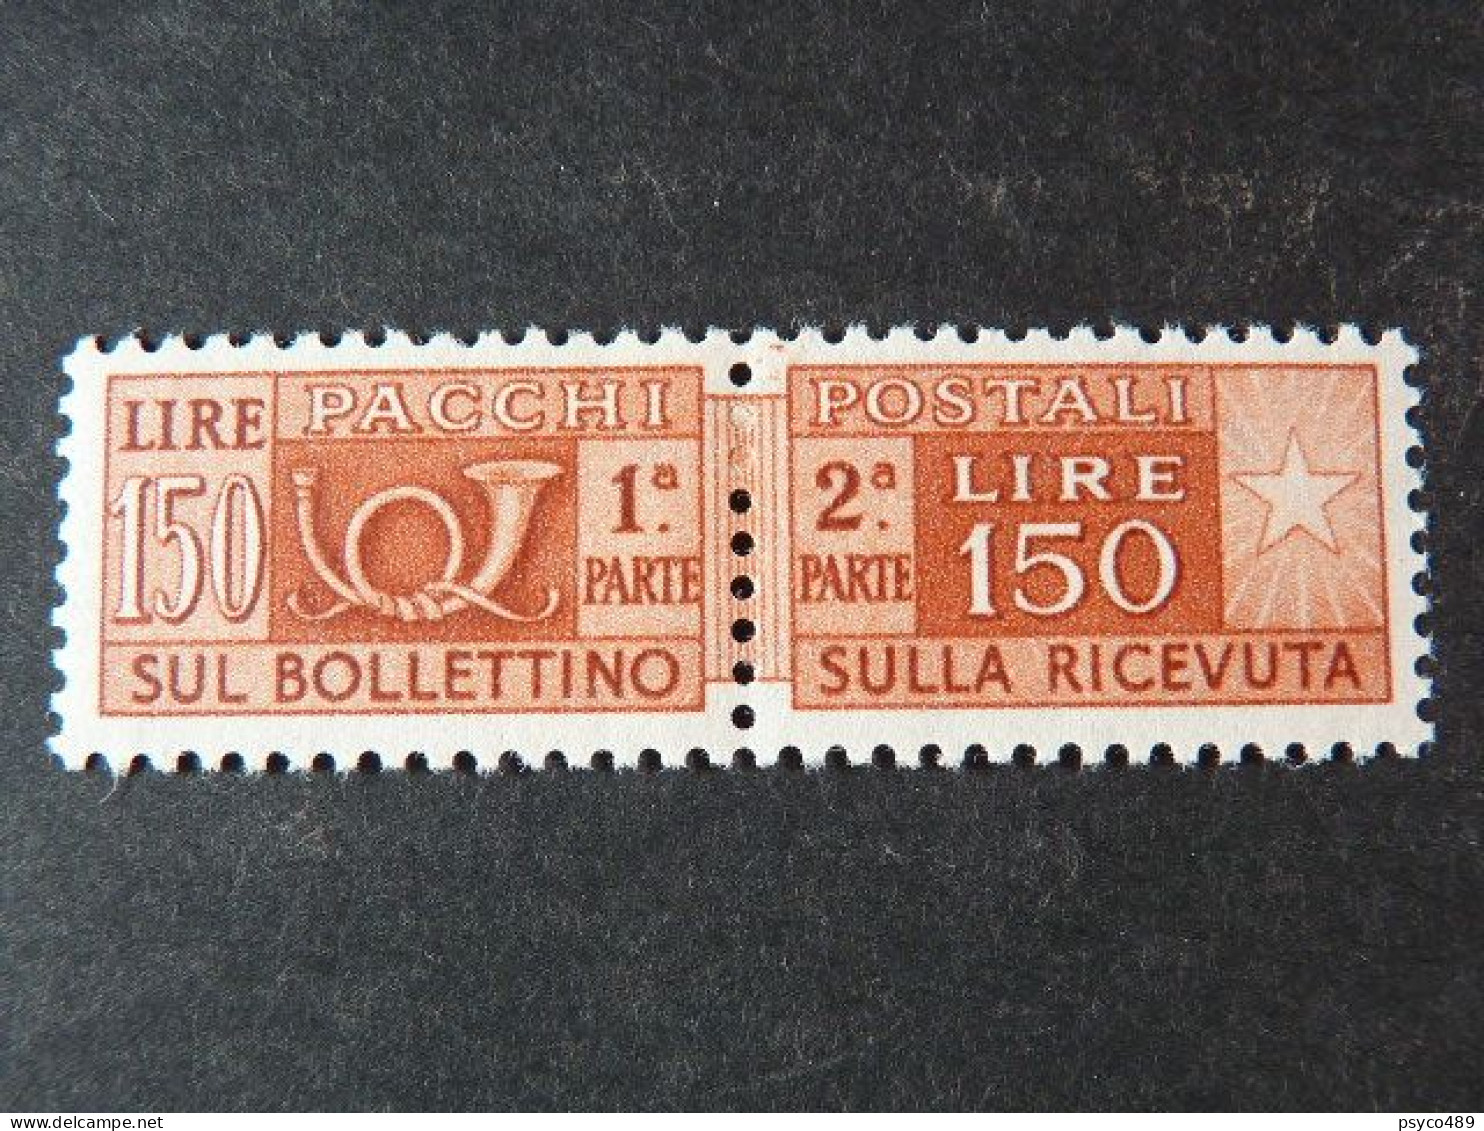 ITALIA Repubblica Pacchi -1955- "Corno Cifra" £. 150 Varietà Filigrana MNH** (descrizione) - Postpaketten